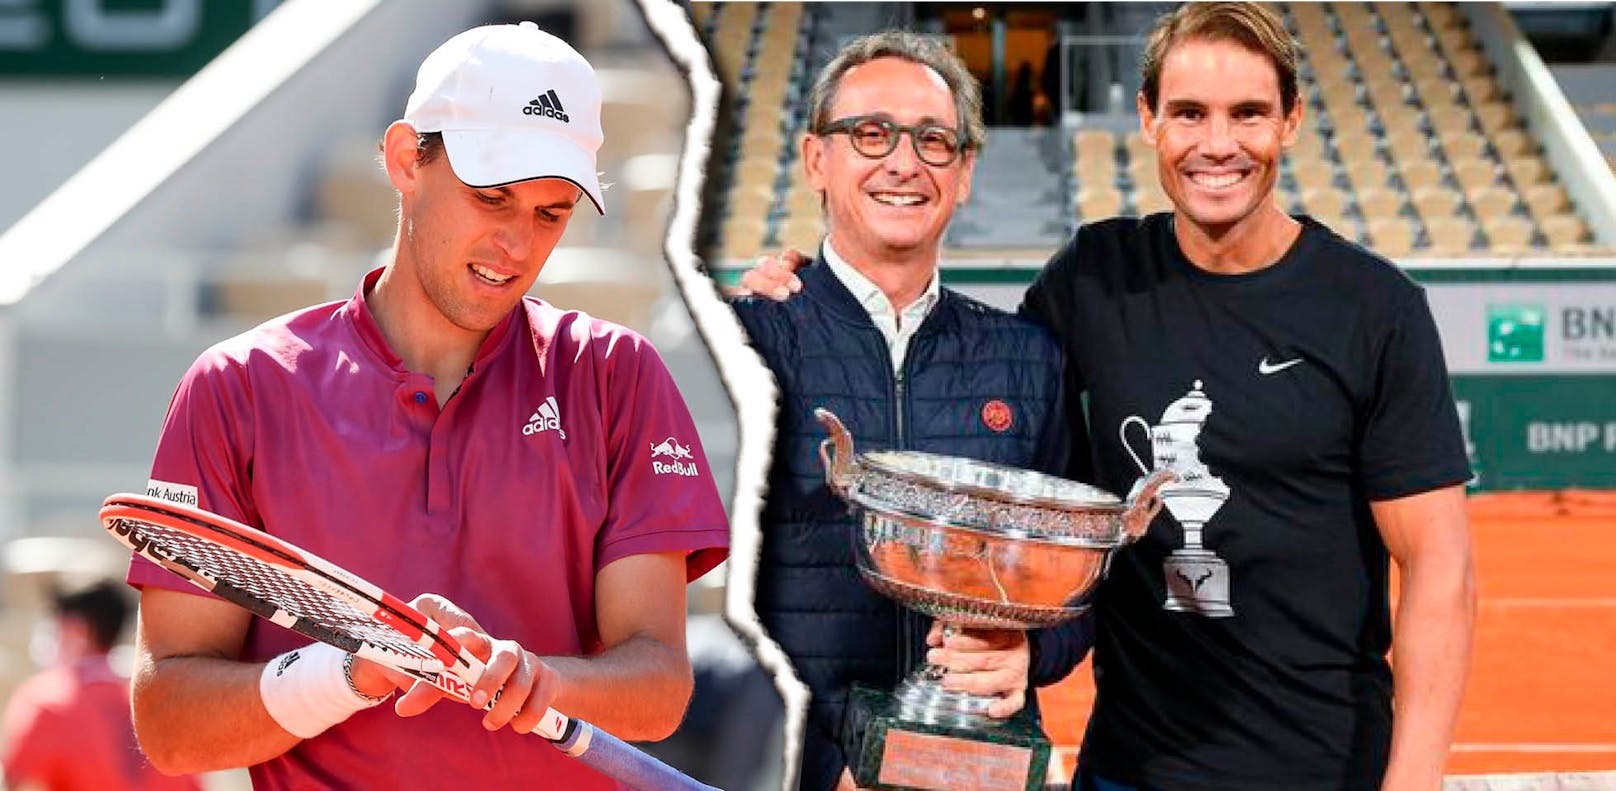 Tennis-Ass Thiem in der Krise: Aus für Vertrauensperson, Hilfe von Rivale Nadal